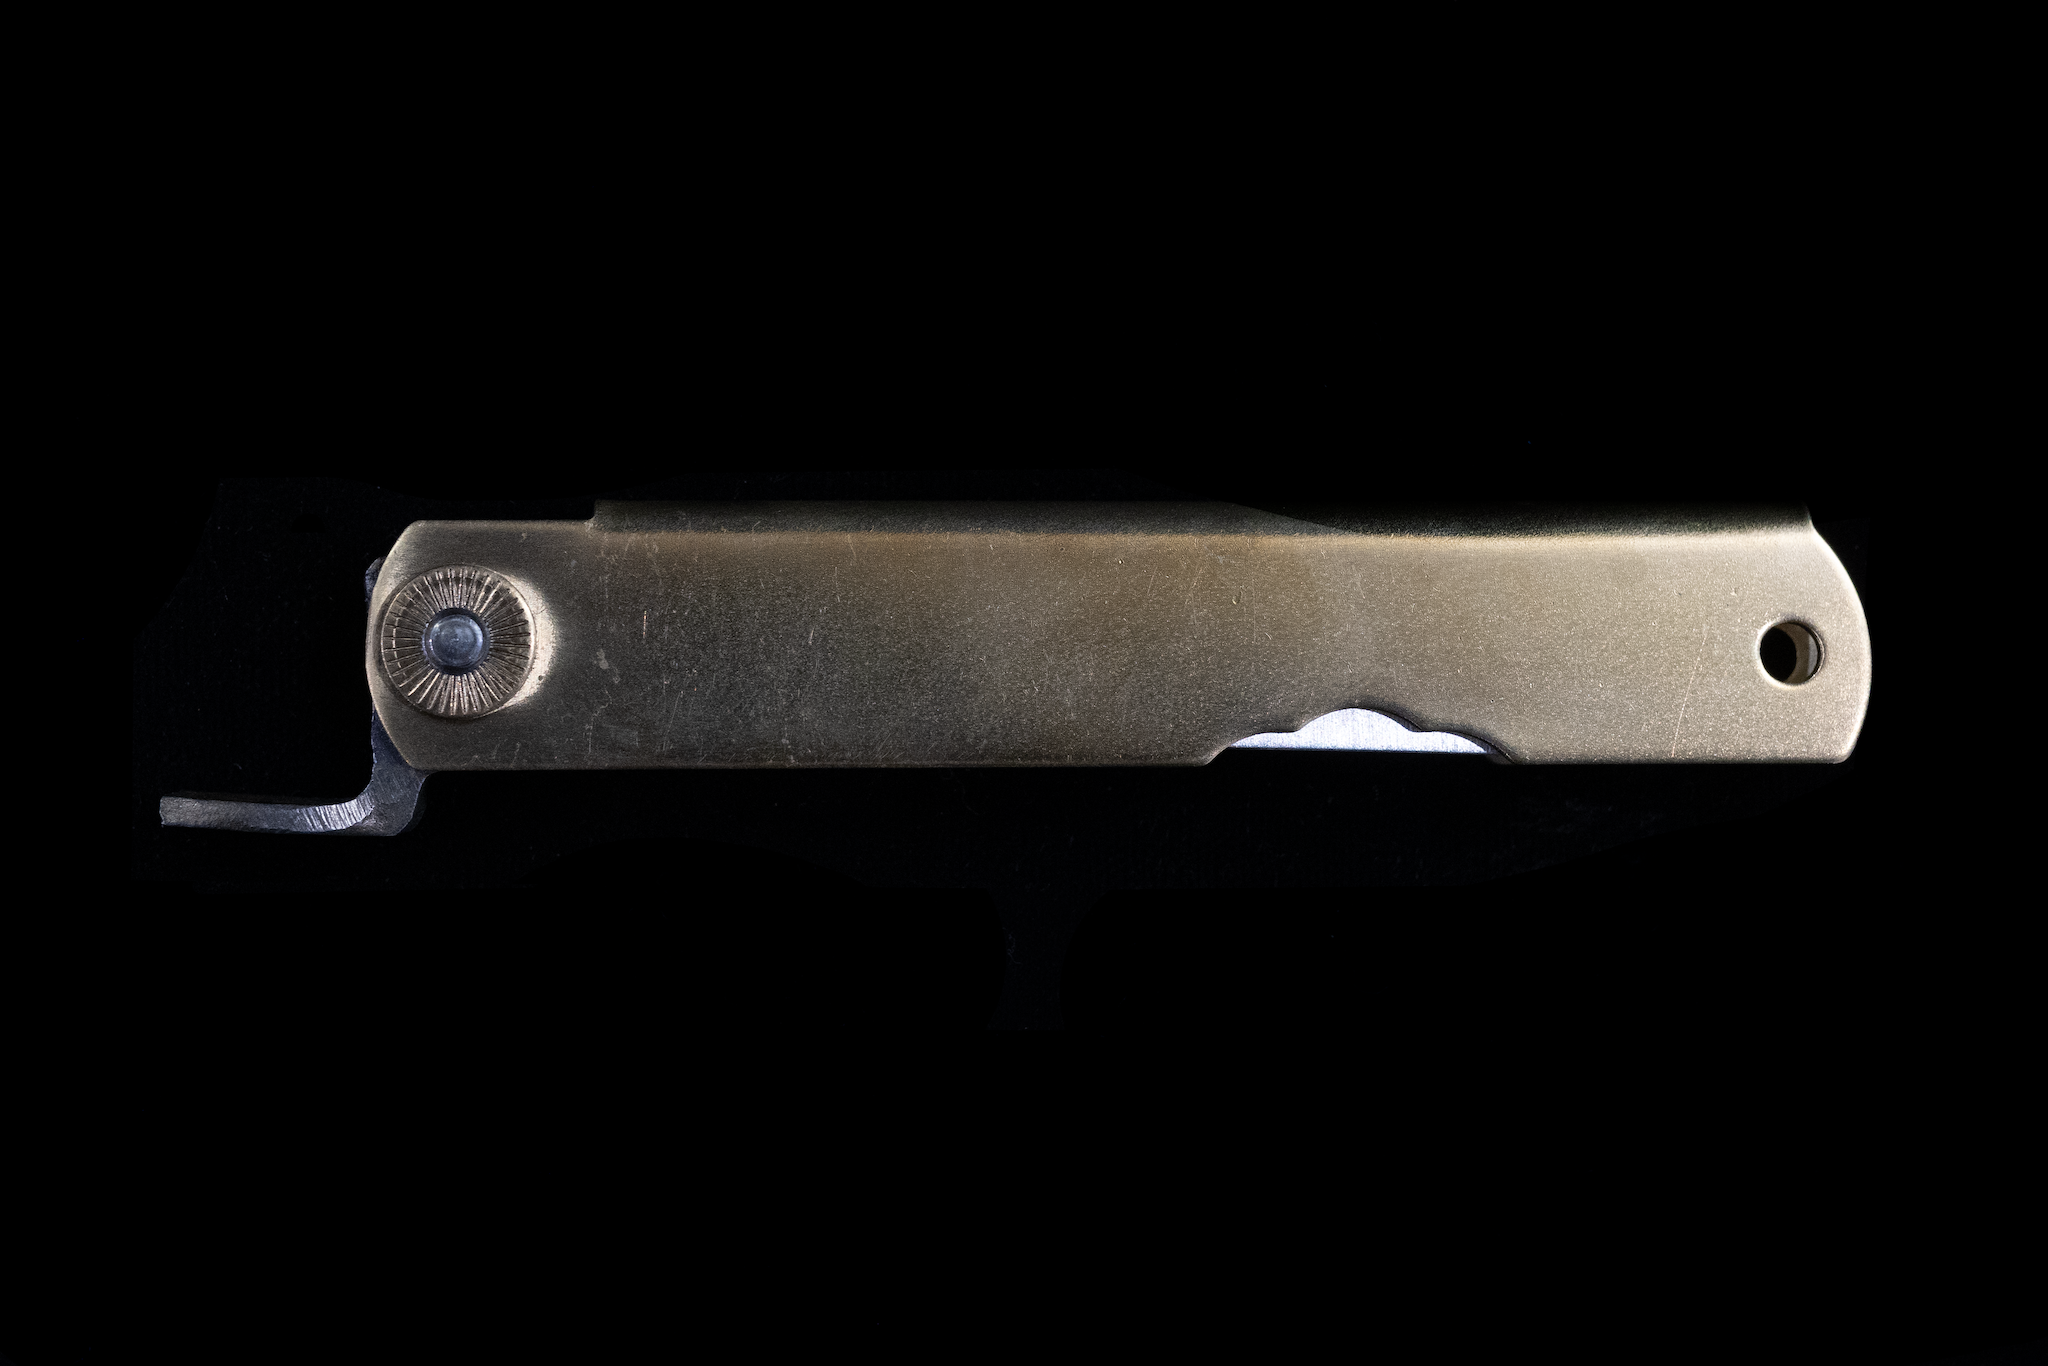 120mm Japanese Brass Pocket Knife - Whisk